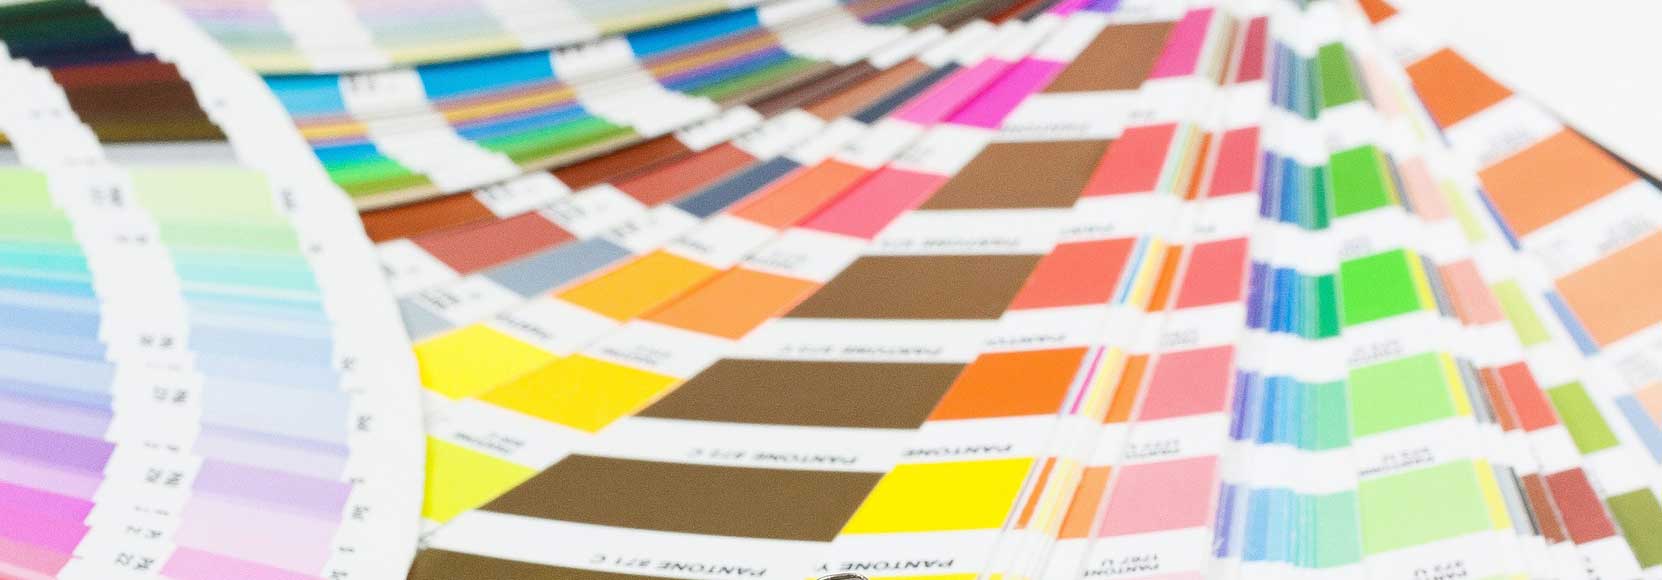 Druckerei für eine komplette Vielfalt der Farben